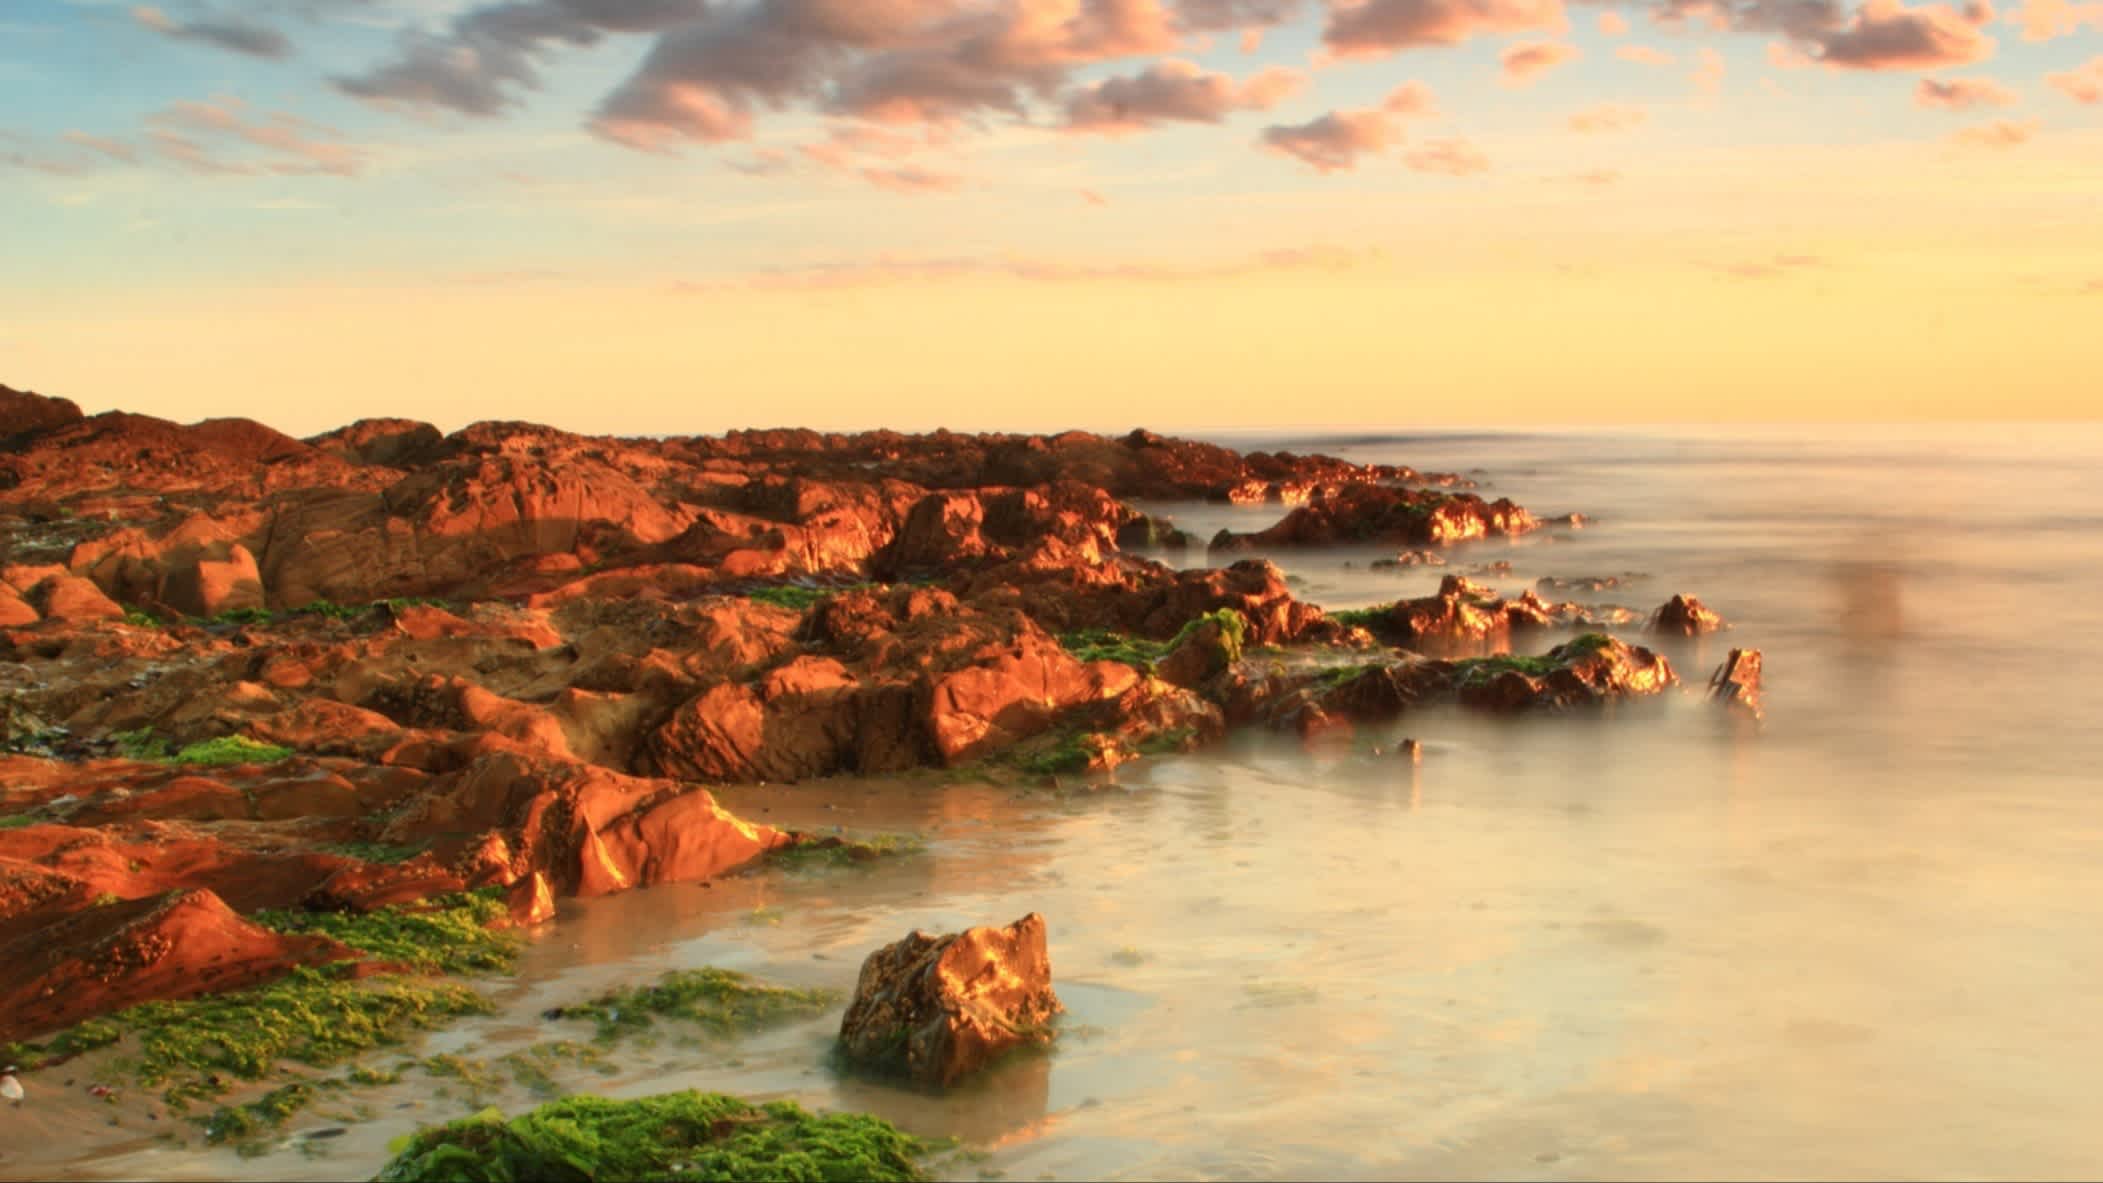 Strand von Los Botes bei Sonnenuntergang, La Paloma, Uruguay mit Felsen im Bild und bei Sonnenuntergang.

